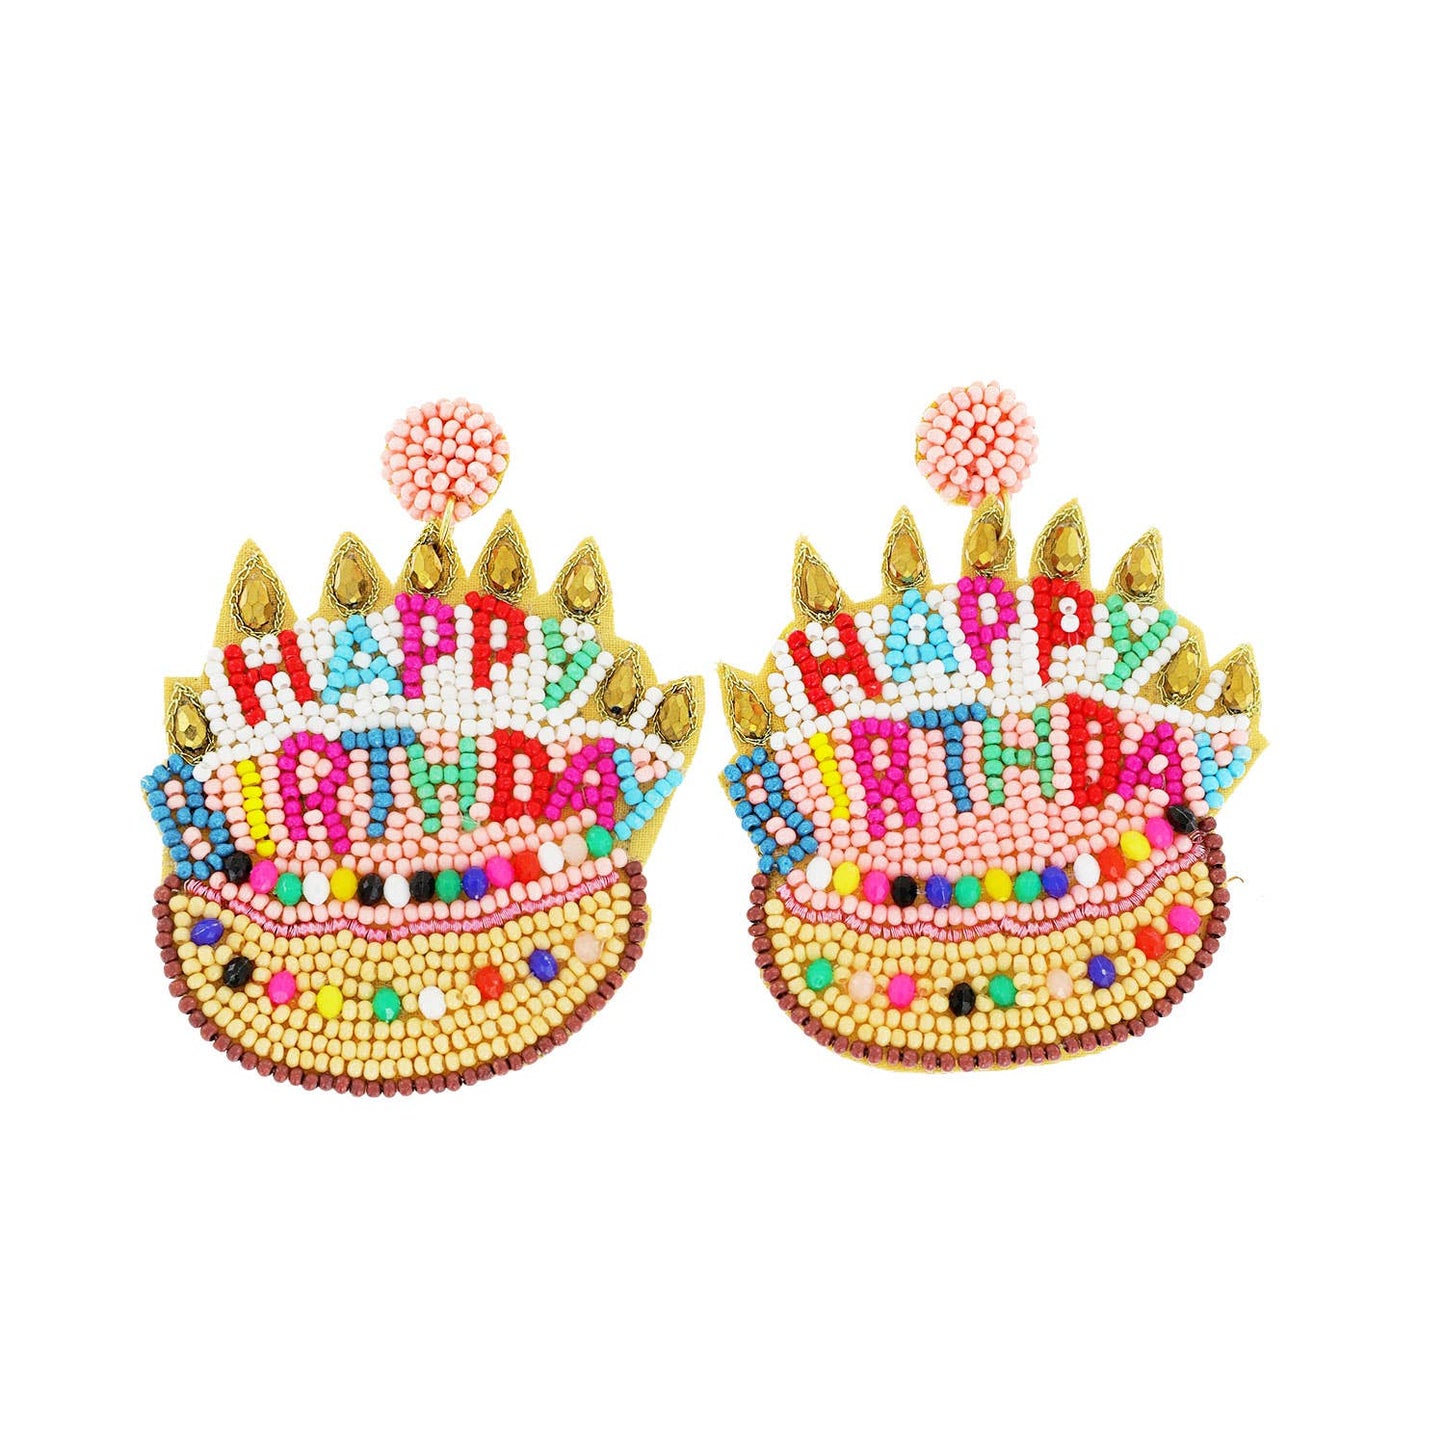 Beaded & Jeweled "Happy Birthday" Cake Dangle Earrings: Yellow